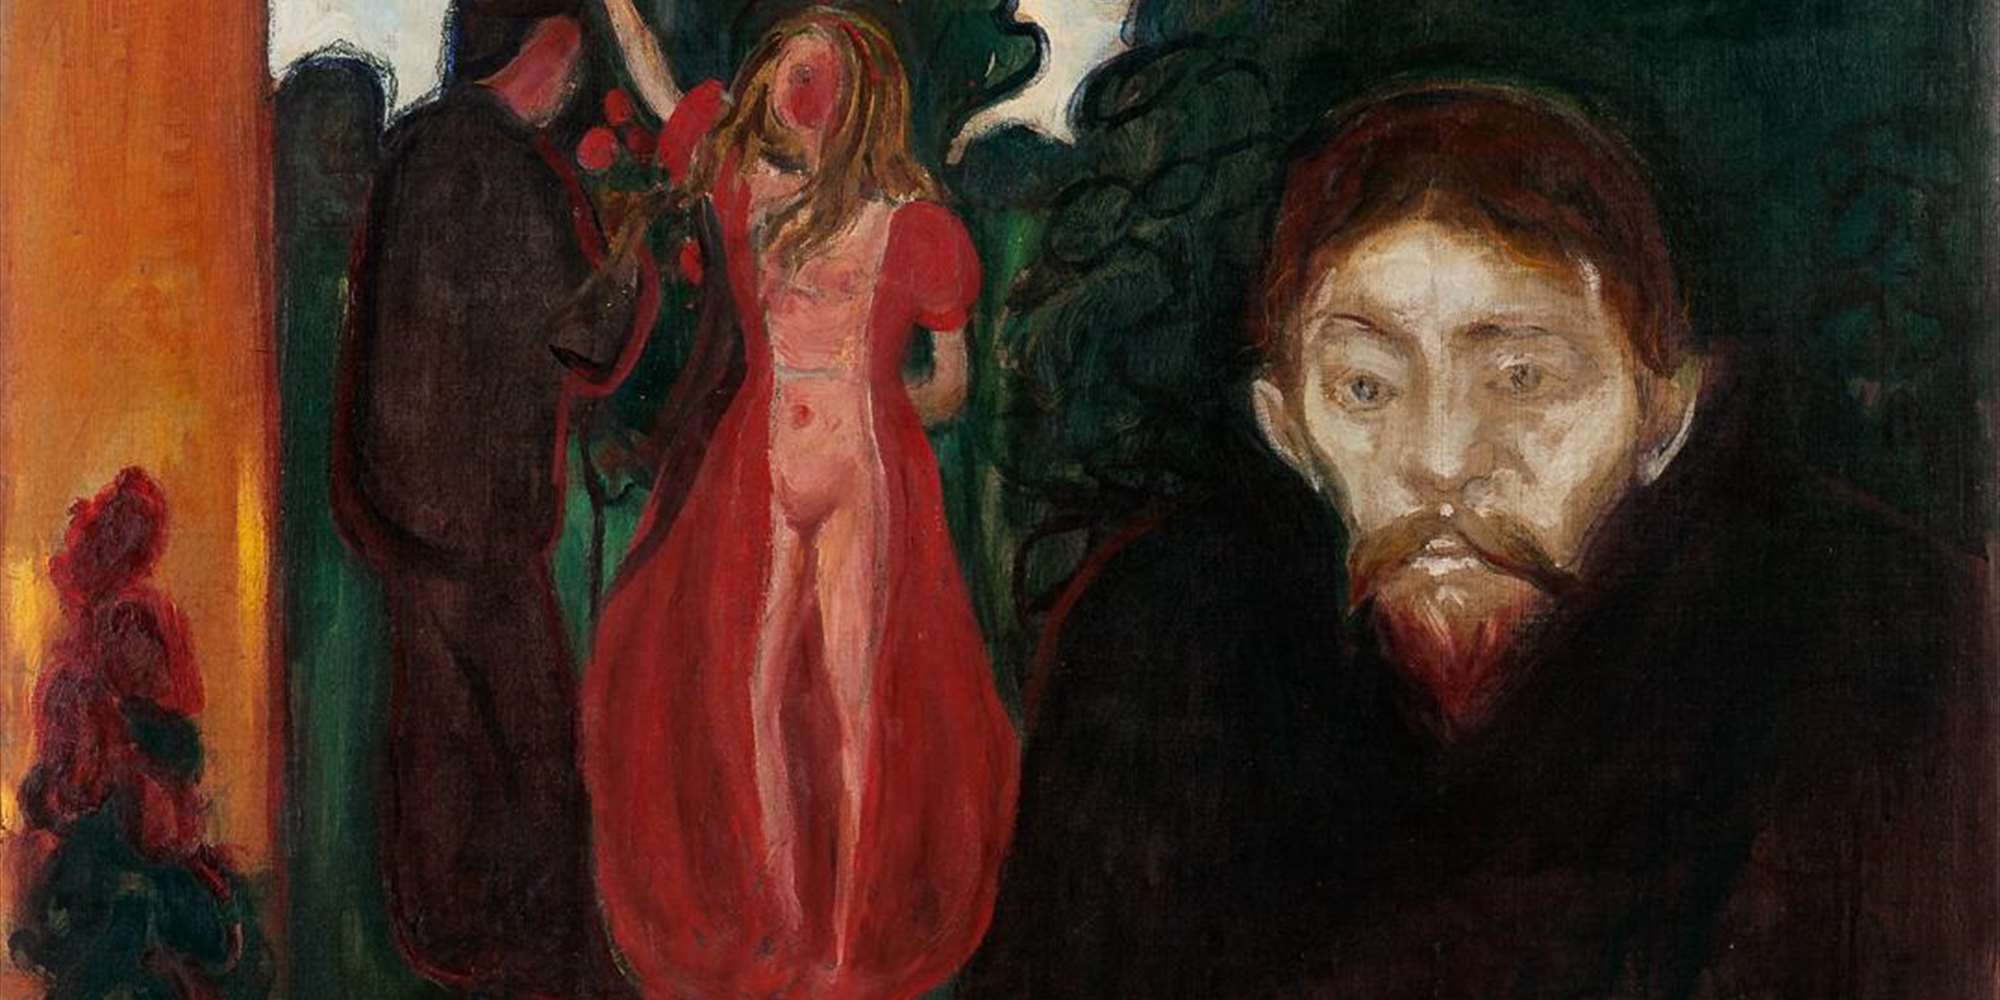 Edvard Munch (1863-1944): Jealousy, 1895.